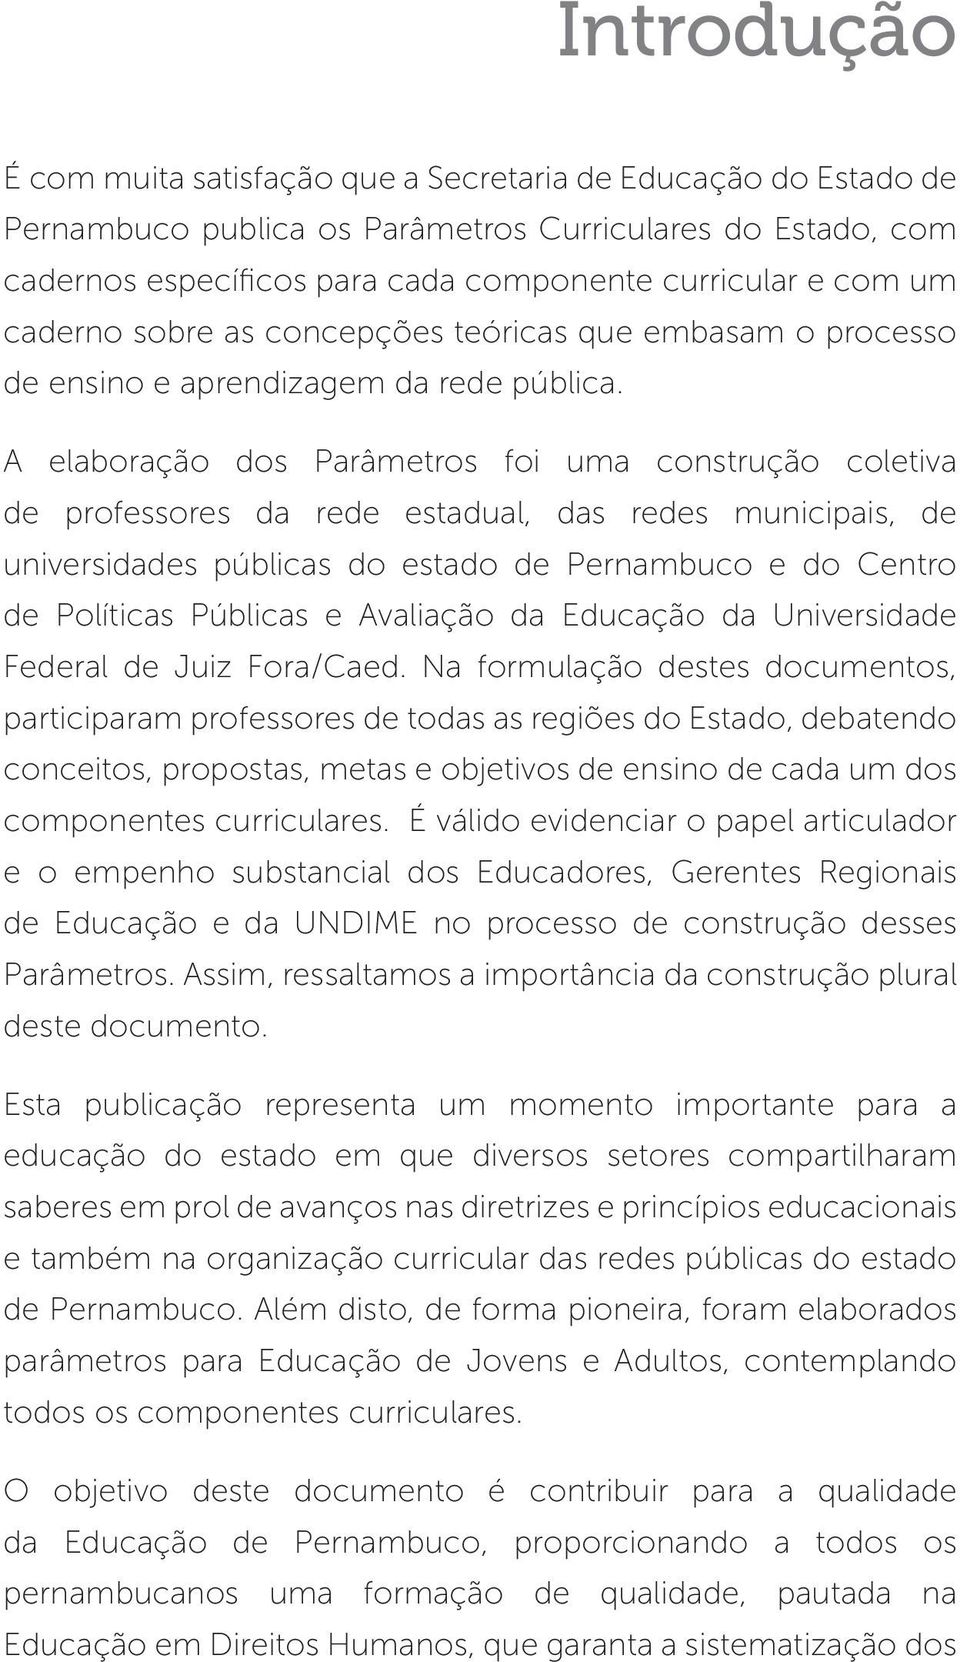 A elaboração dos Parâmetros foi uma construção coletiva de professores da rede estadual, das redes municipais, de universidades públicas do estado de Pernambuco e do Centro de Políticas Públicas e